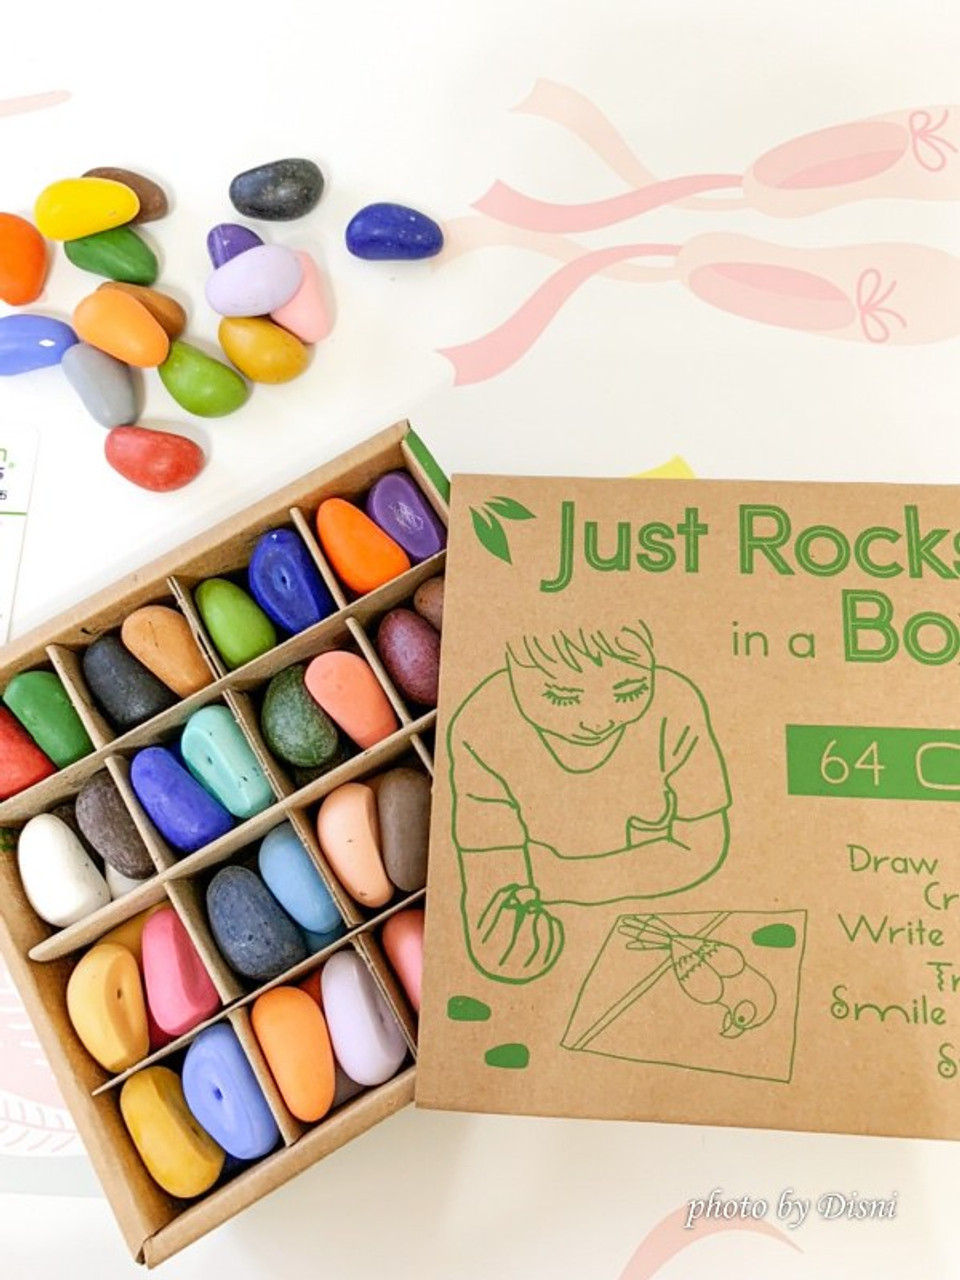 Just Rocks in a Box- 32 color Crayon Rocks